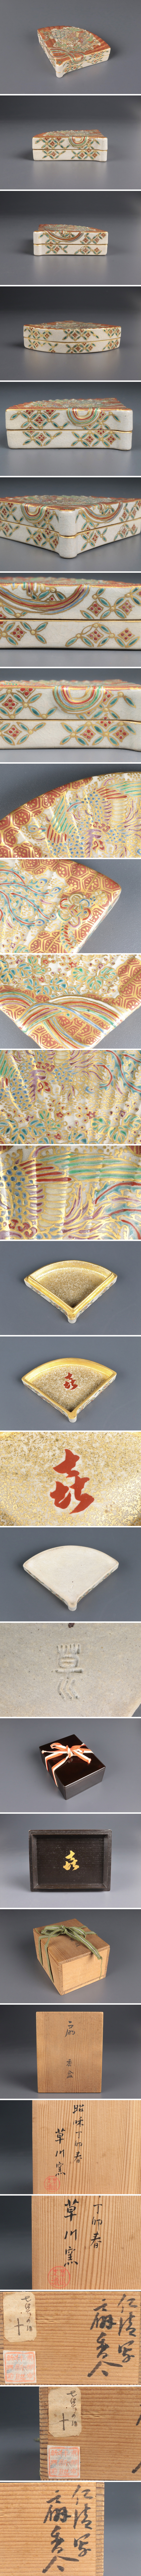 一番の香道具 草川窯 金襴鳳凰紋扇形 香合 共箱 二重箱 茶道具 骨董品 古美術品 8413nbfz 薩摩